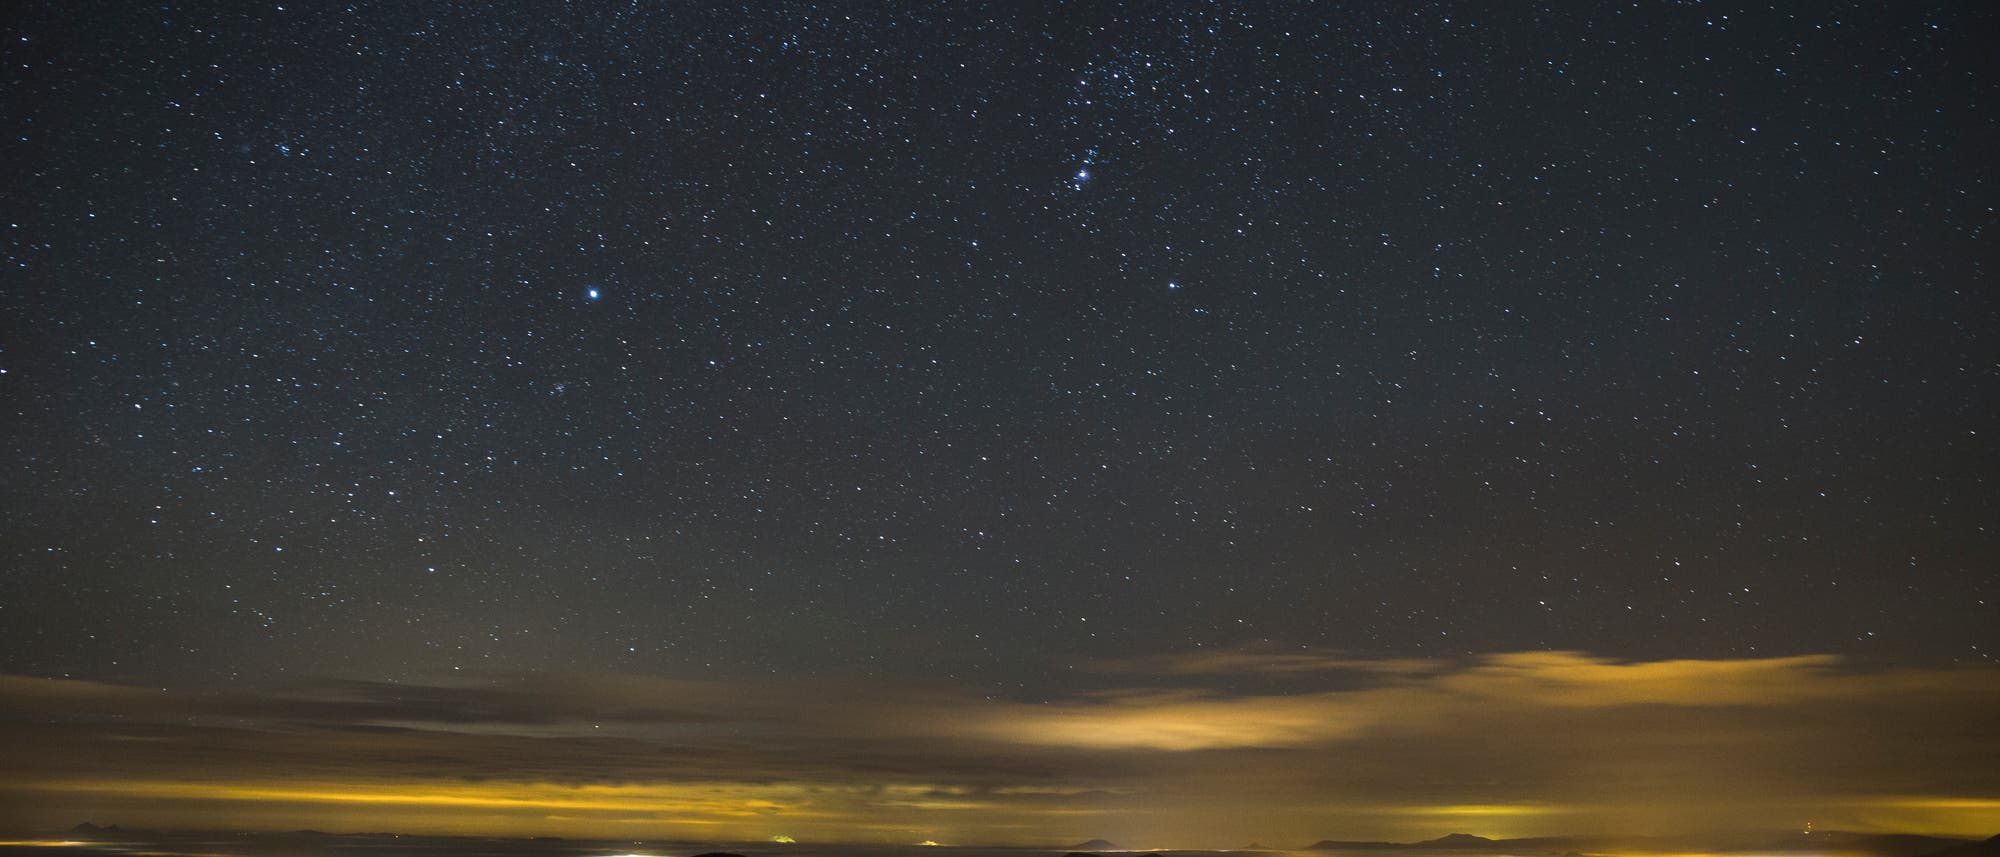 Ronny Rohloff notiert: "Das Bild entstand am 18. November 2017 in den frühen Morgenstunden während einer Übernachtung auf der Hochwaldbaude im Zittauer Gebirge im äußersten Südosten Sachsens. Es zeigt das Sternbild Orion über Tschechien. Schön zu sehen ist auch, wie sich in den Tälern langsam der Morgennebel bildet."